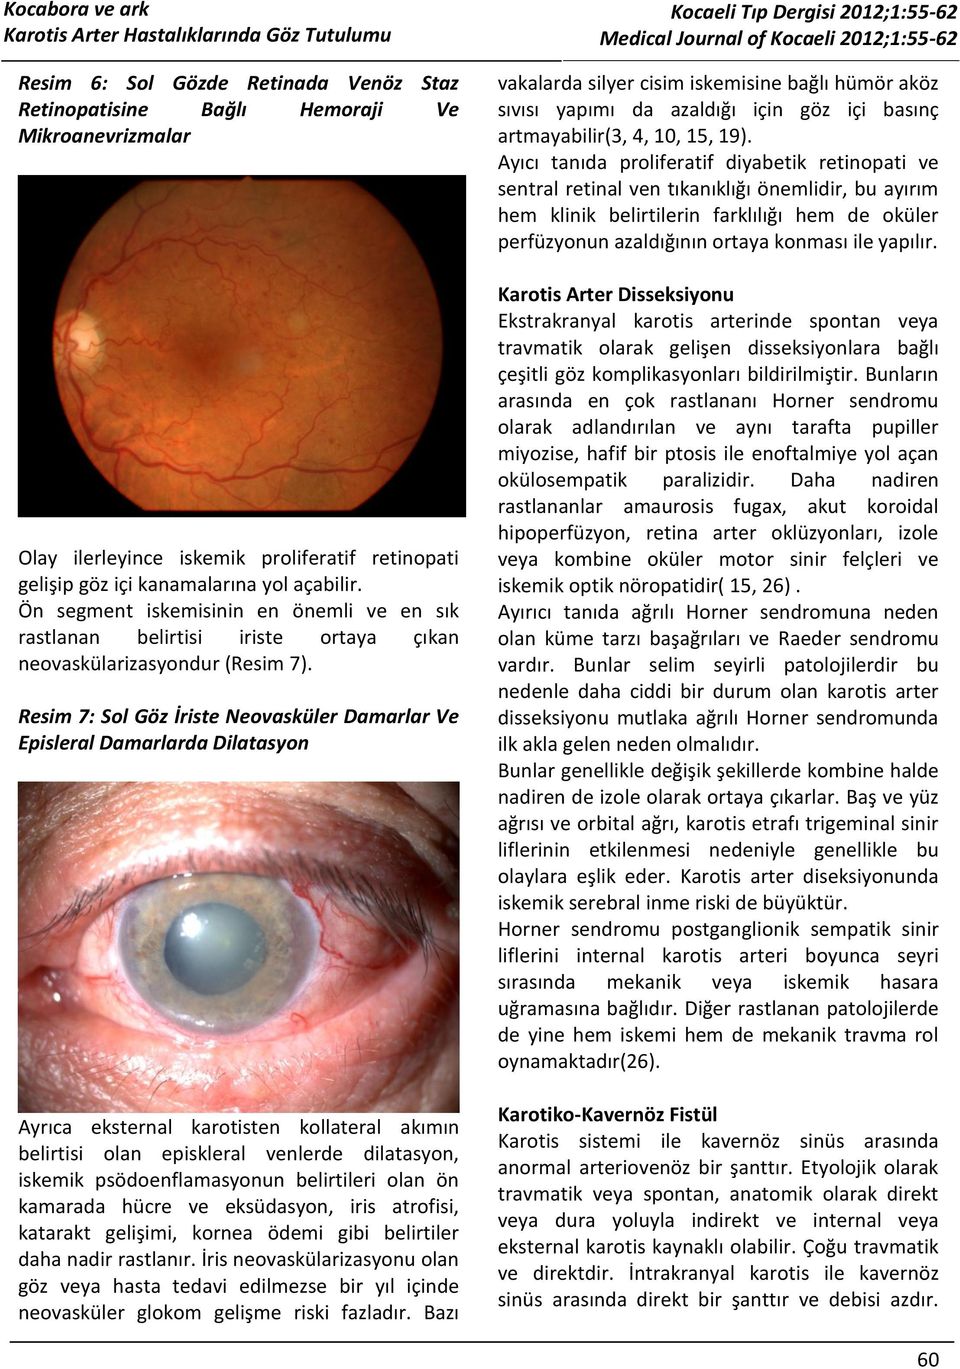 Resim 7: Sol Göz İriste Neovasküler Damarlar Ve Episleral Damarlarda Dilatasyon Ayrıca eksternal karotisten kollateral akımın belirtisi olan episkleral venlerde dilatasyon, iskemik psödoenflamasyonun